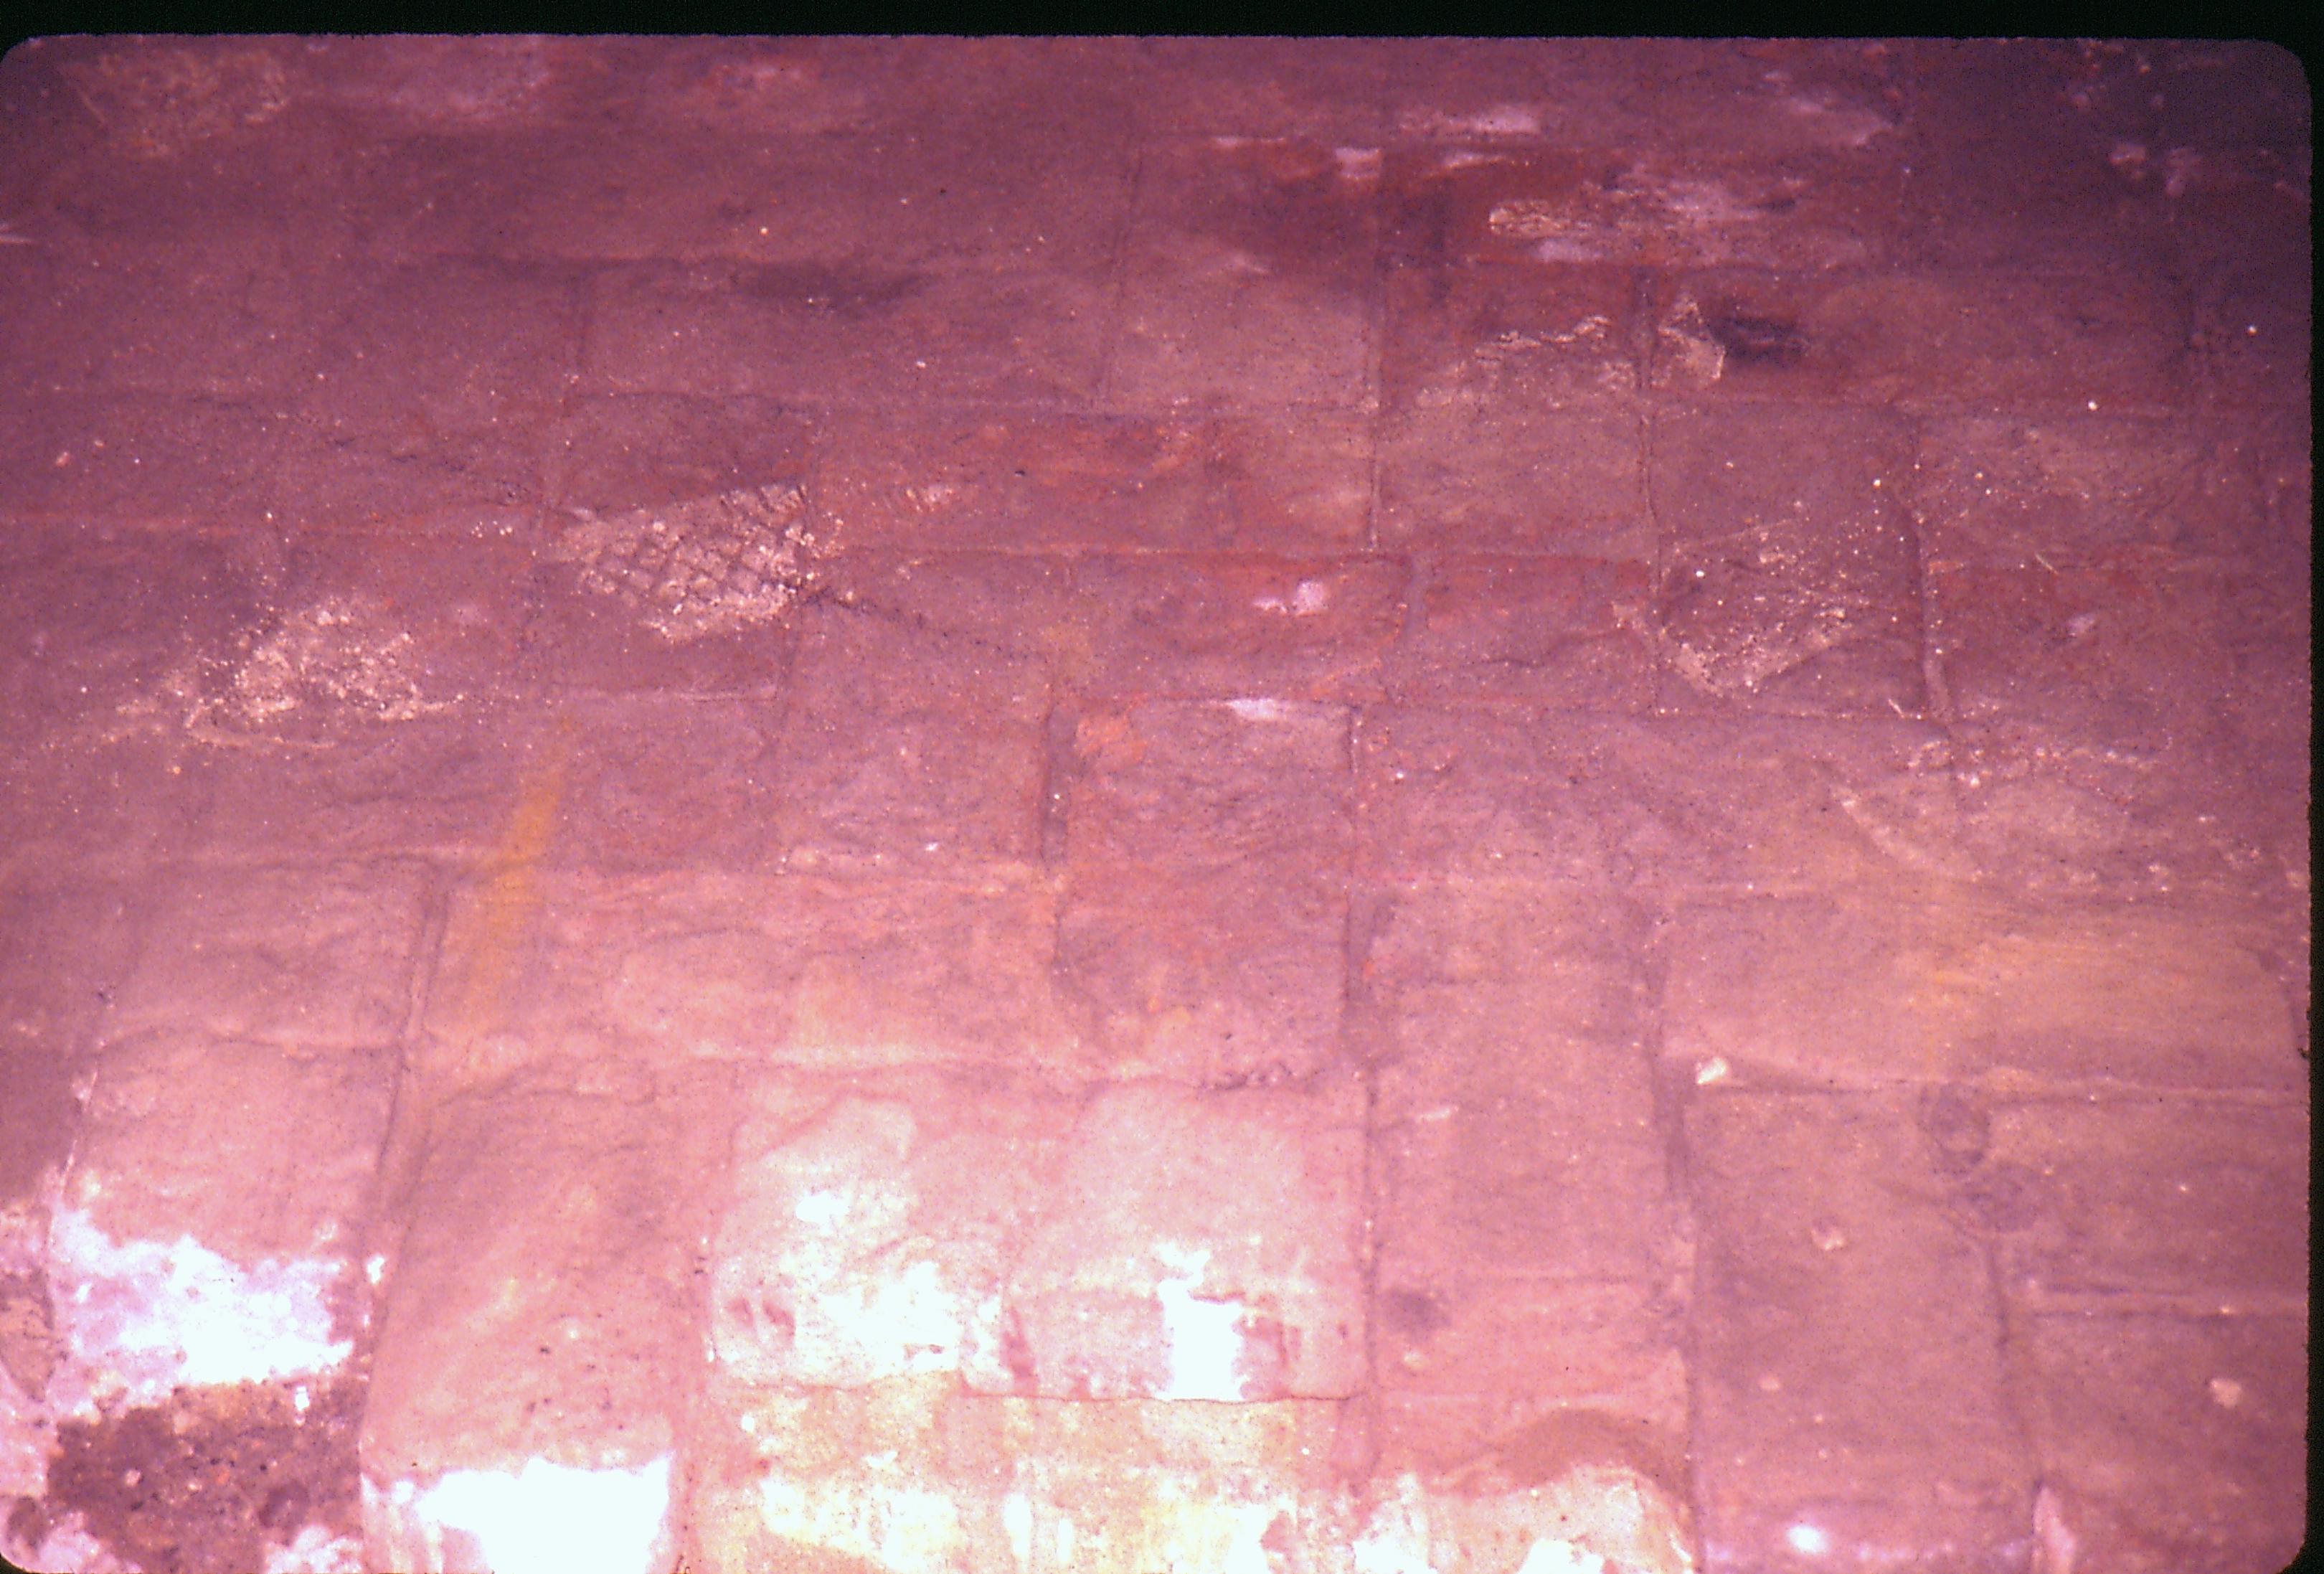 Lyon House - basement, brick pattern floor detail. Pattern appears to be herringbone. Looking East from basement Lyon, Basement, brick floor